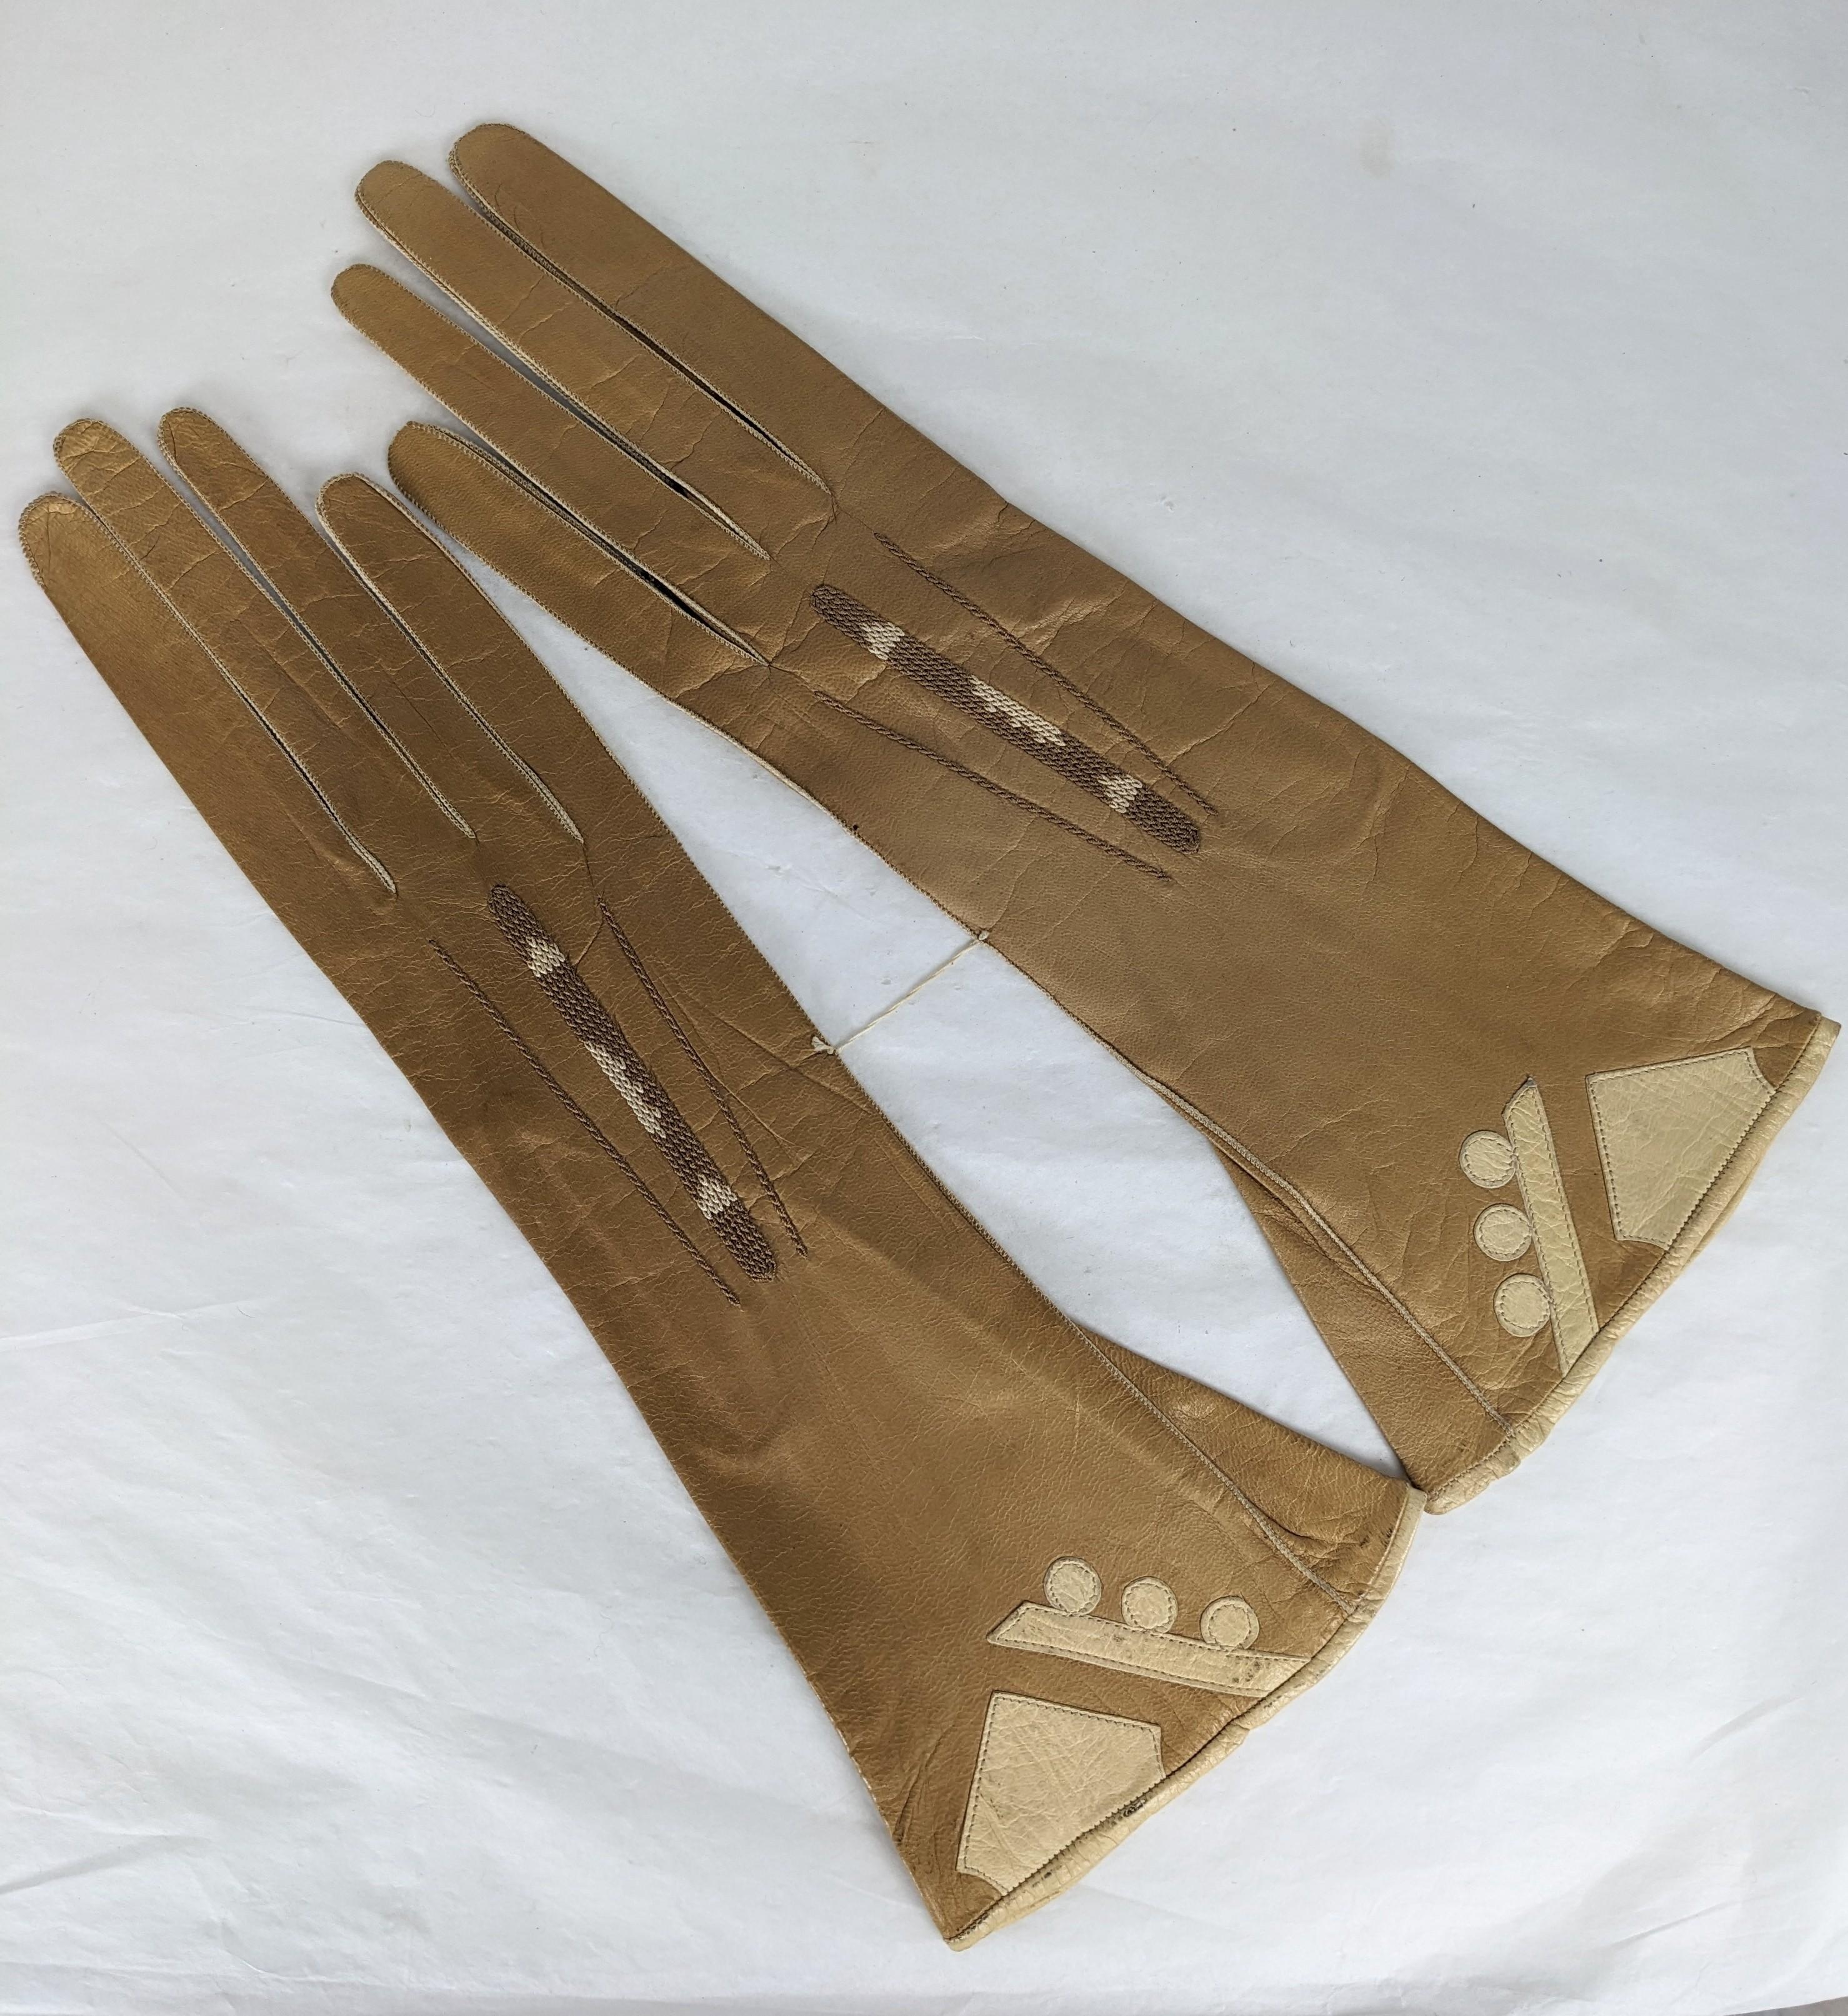 Charmante Art-Deco-Motiv-Lederhandschuhe, die nie getragen wurden. Sie sind immer noch so zusammengenäht, wie sie in der damaligen Zeit verkauft wurden. Art-Déco-Lederapplikationen am Bündchen und passendes Strickmuster am Oberteil. Zu winzig, um